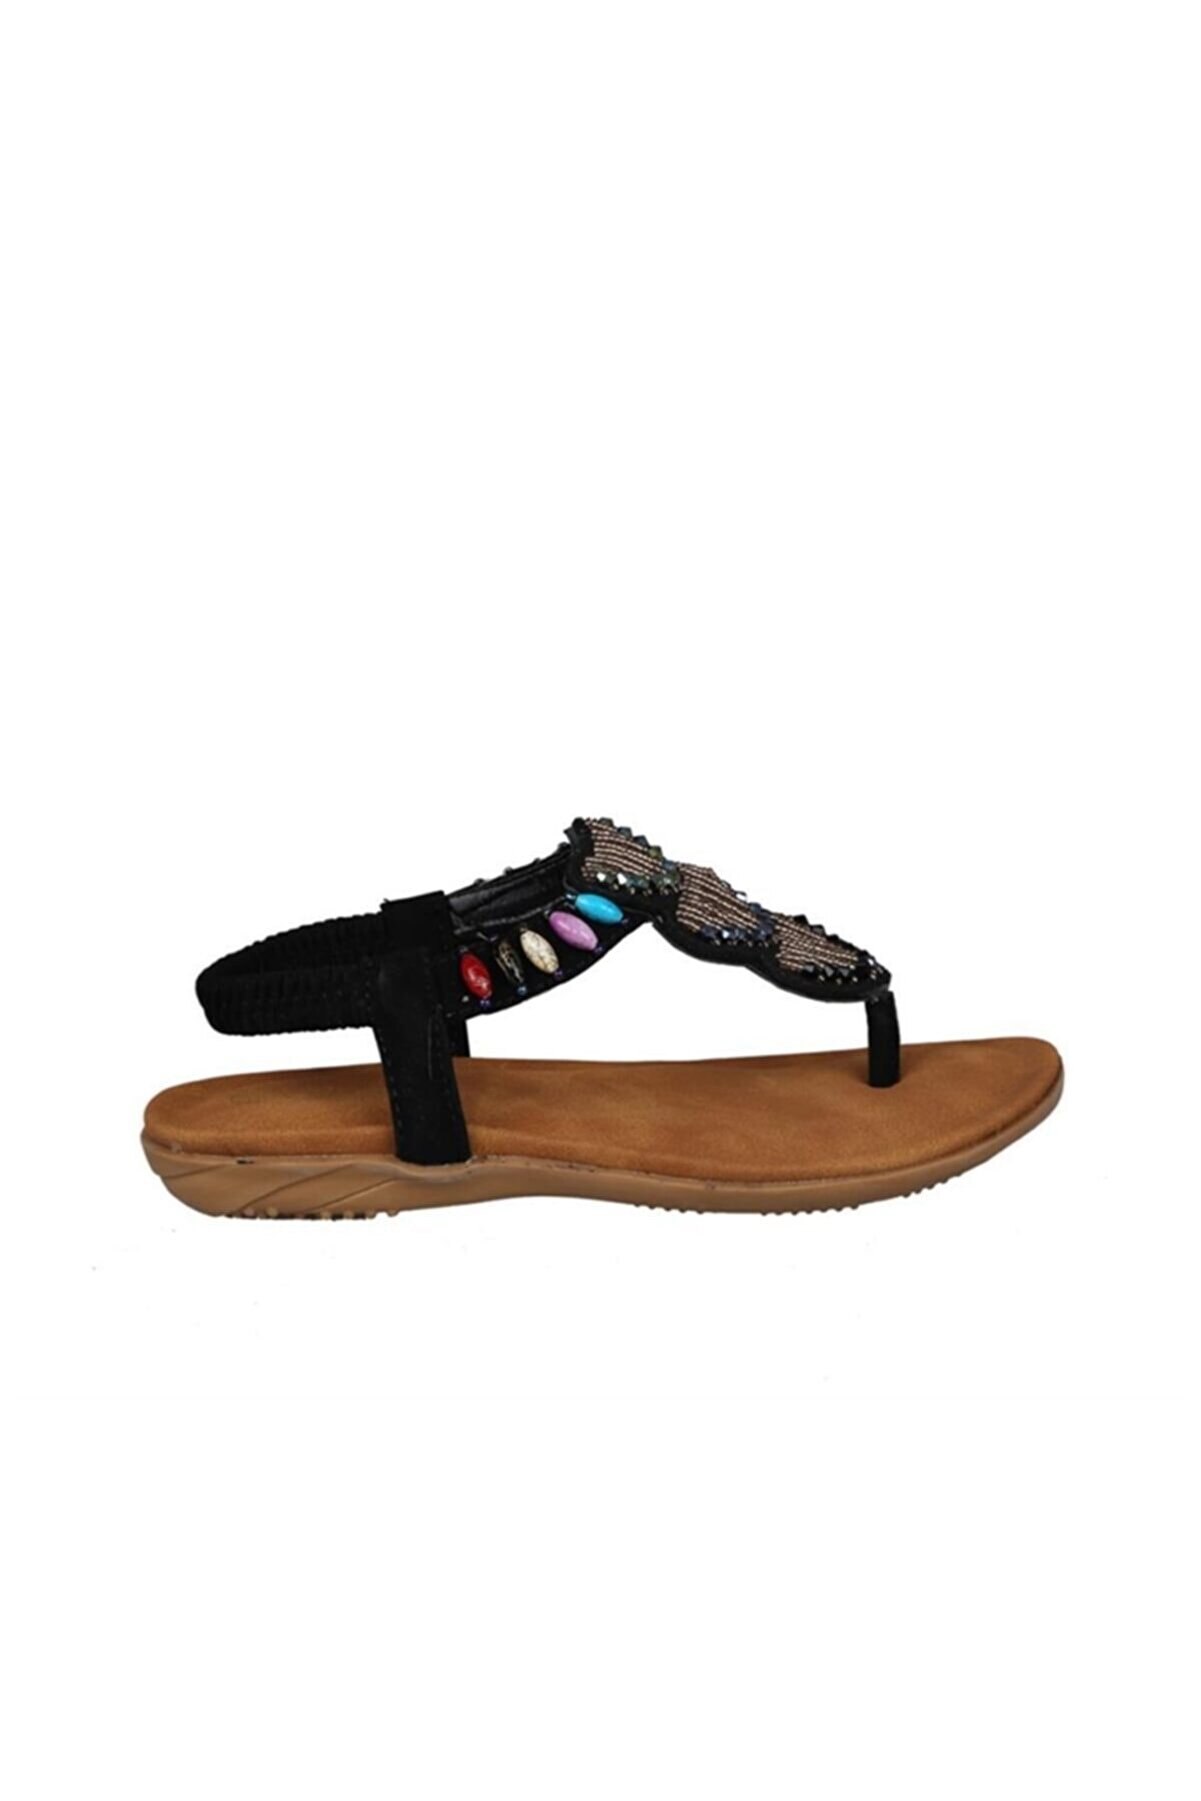 Guja Kız Çocuk Siyah Renkli Sandalet 19y251-5